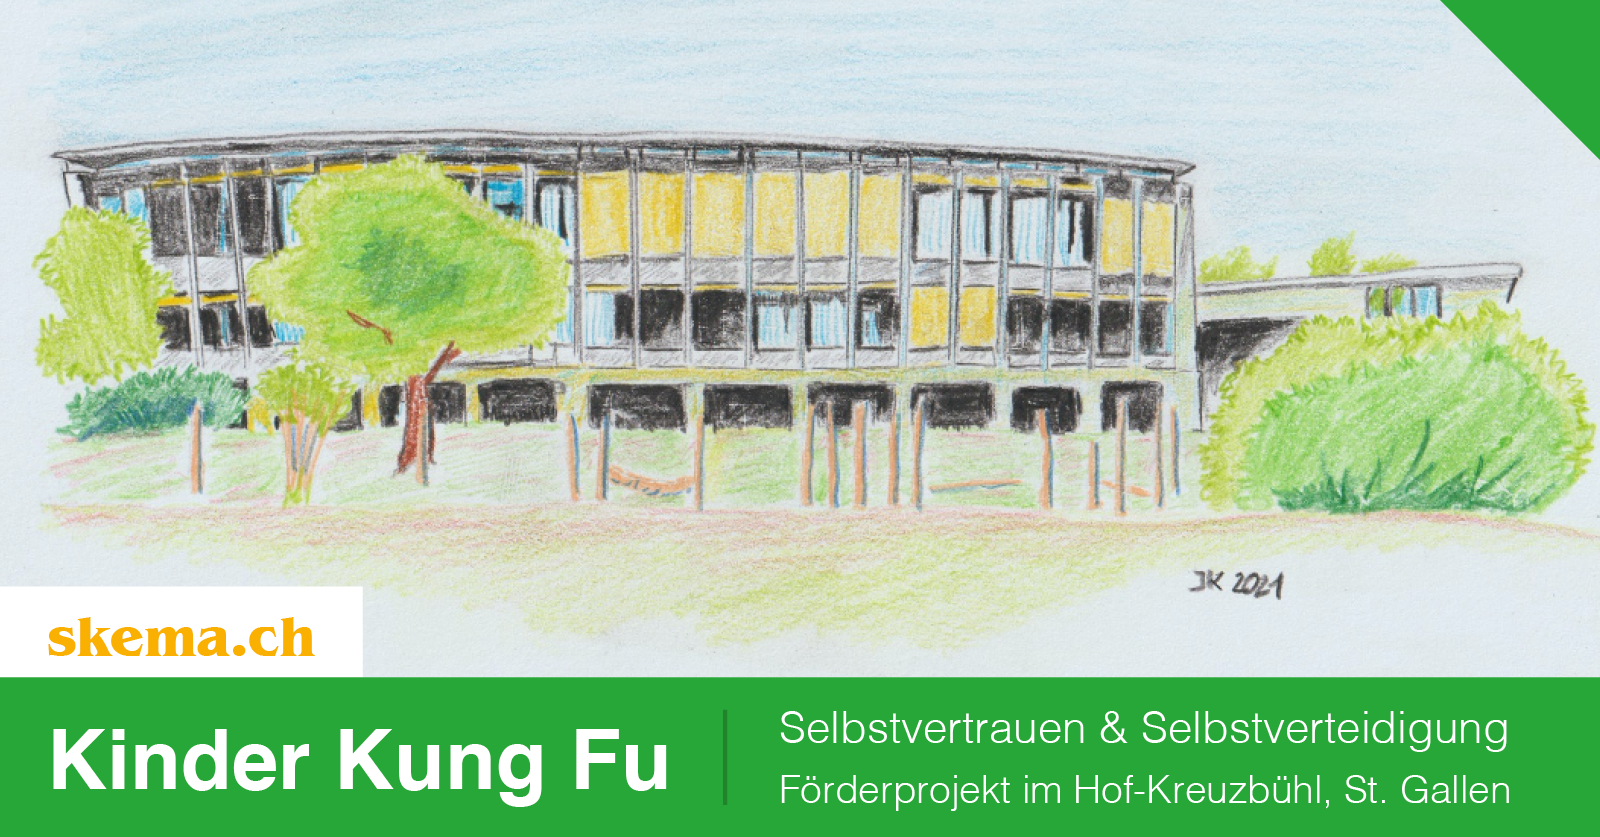 Selbstvertrauen & Selbstverteidigung – Kung Fu Projekt im Hof-Kreuzbühl, St. Gallen